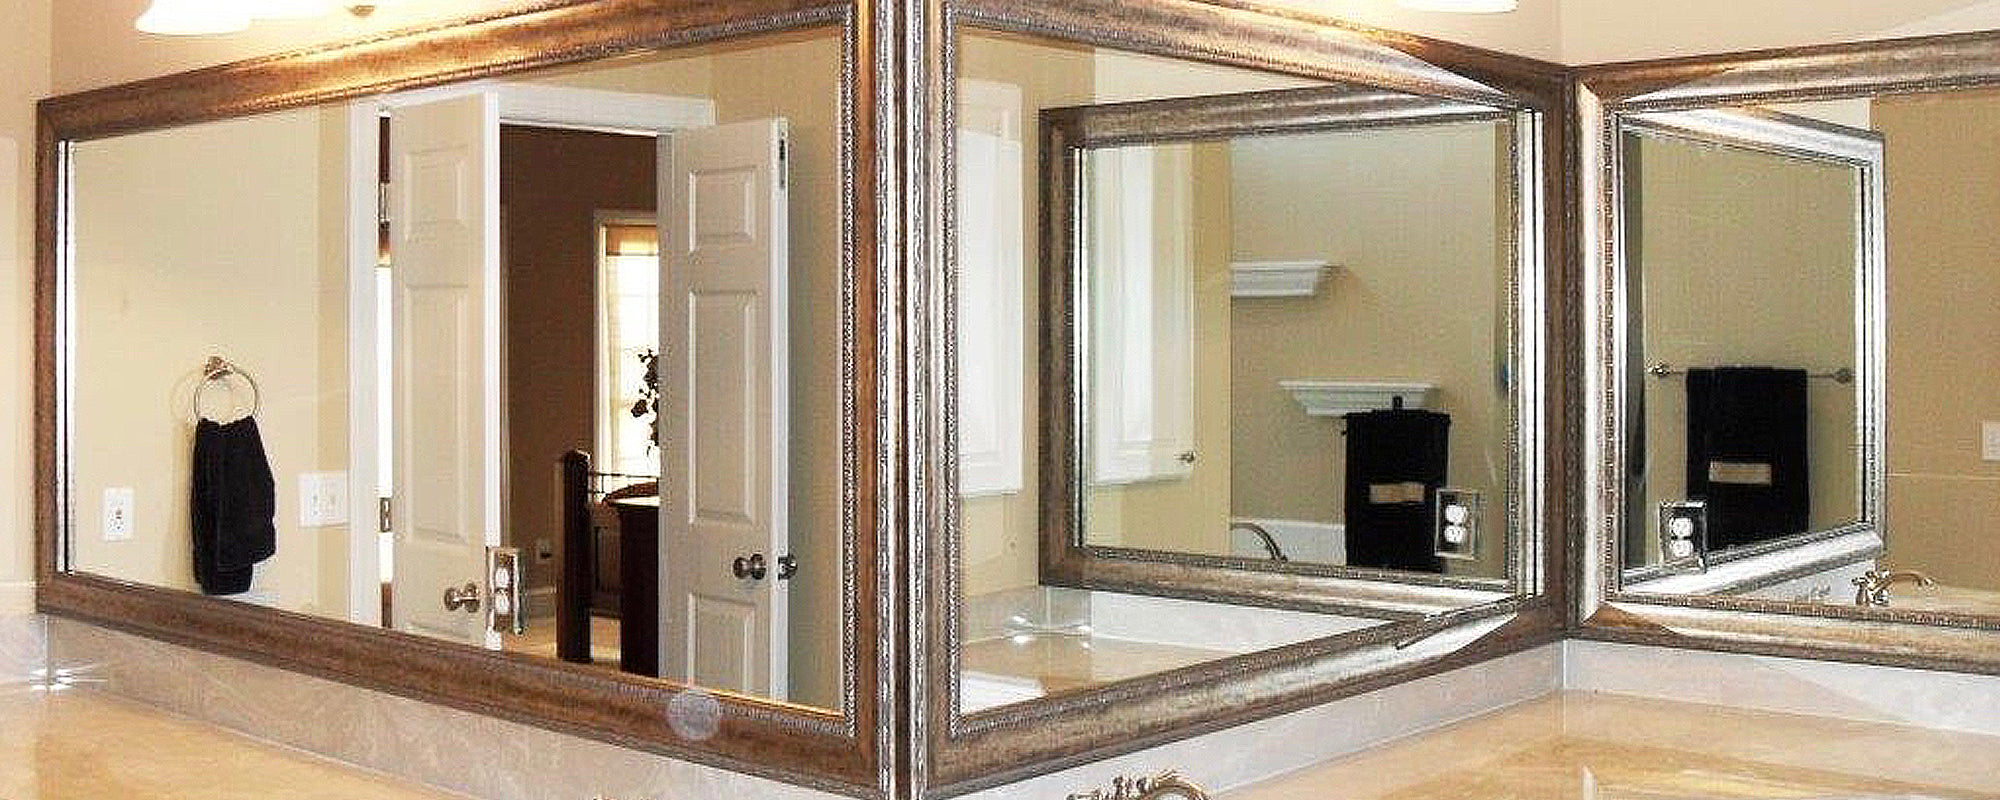 Mirror Frame in Corner